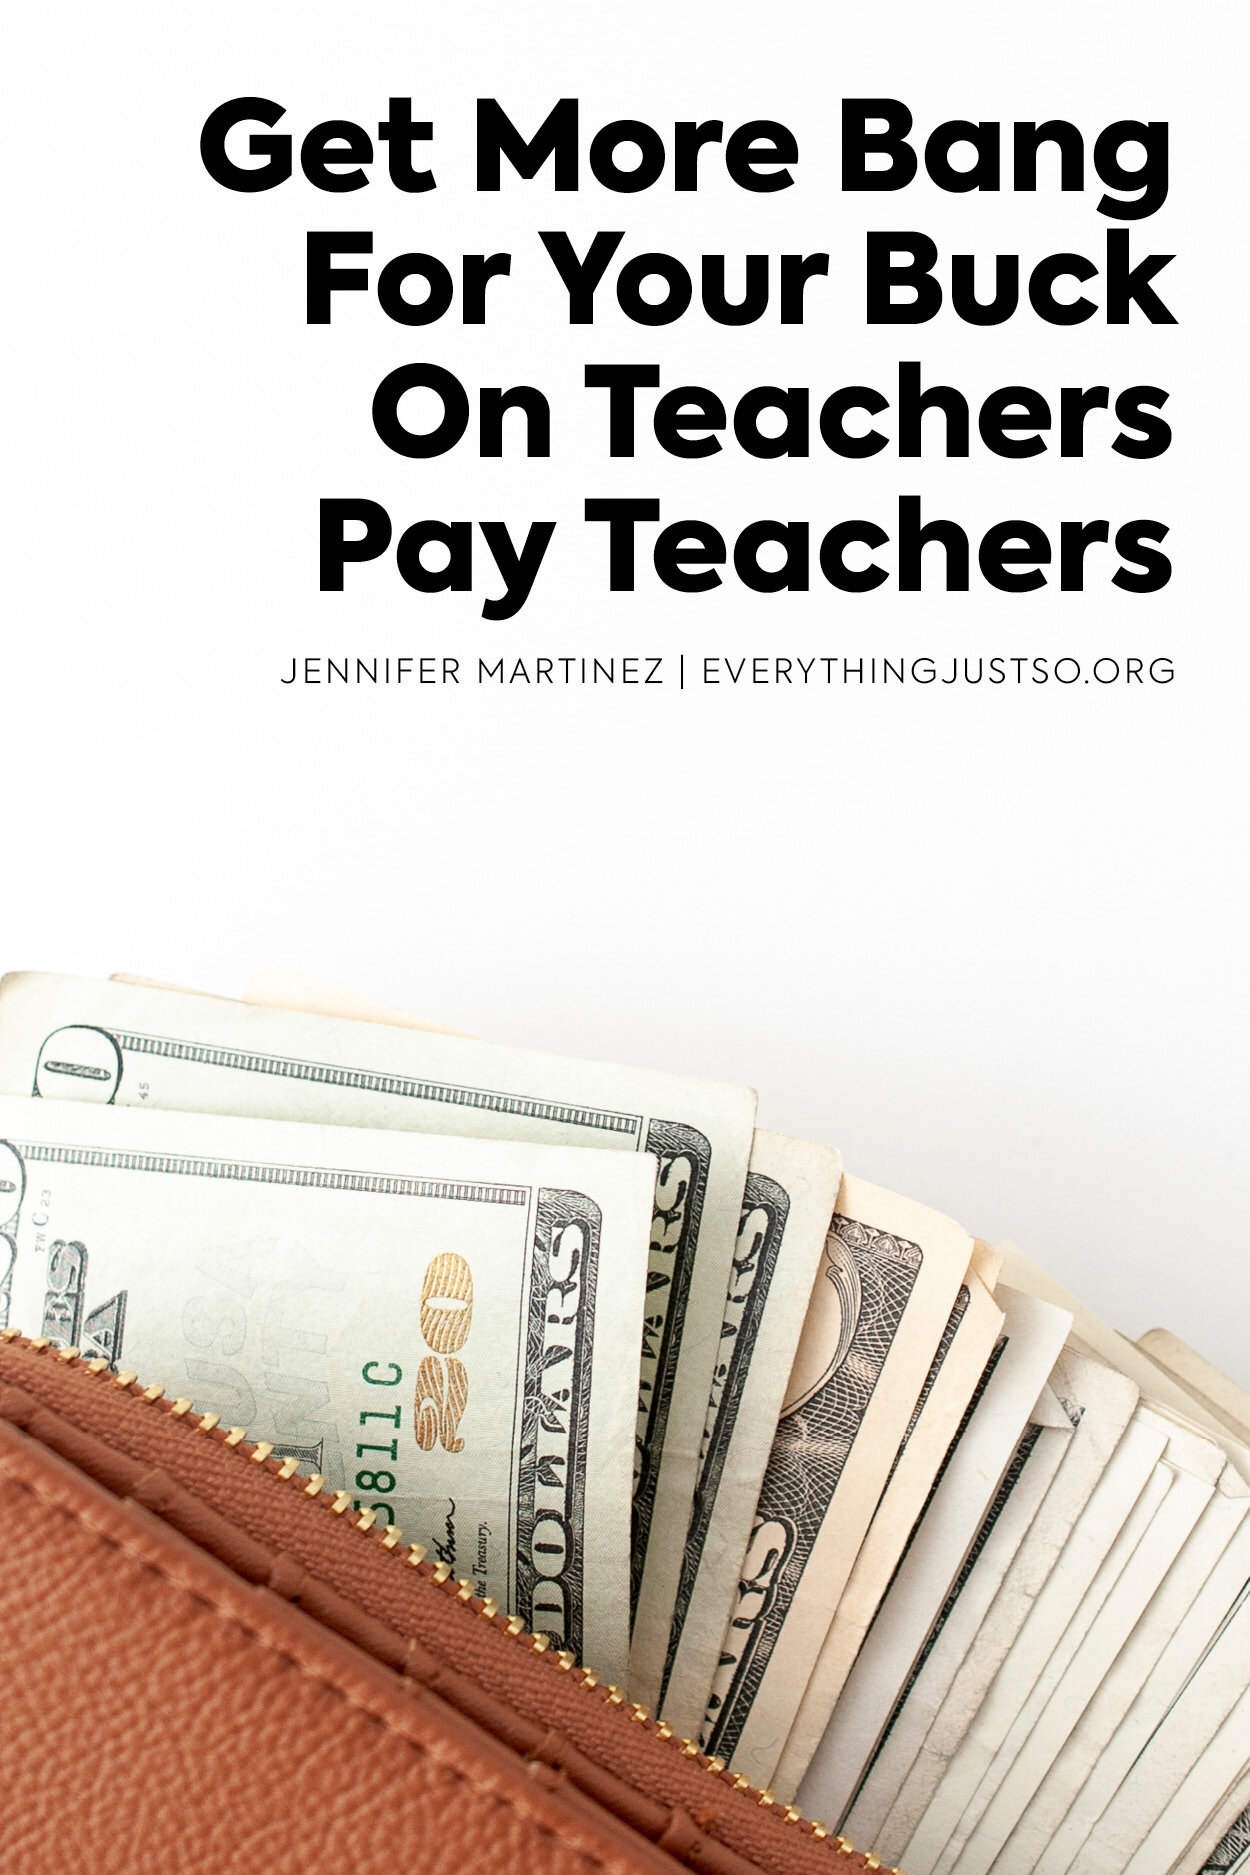 Can you really make money on teachers pay teachers? Let's Deep